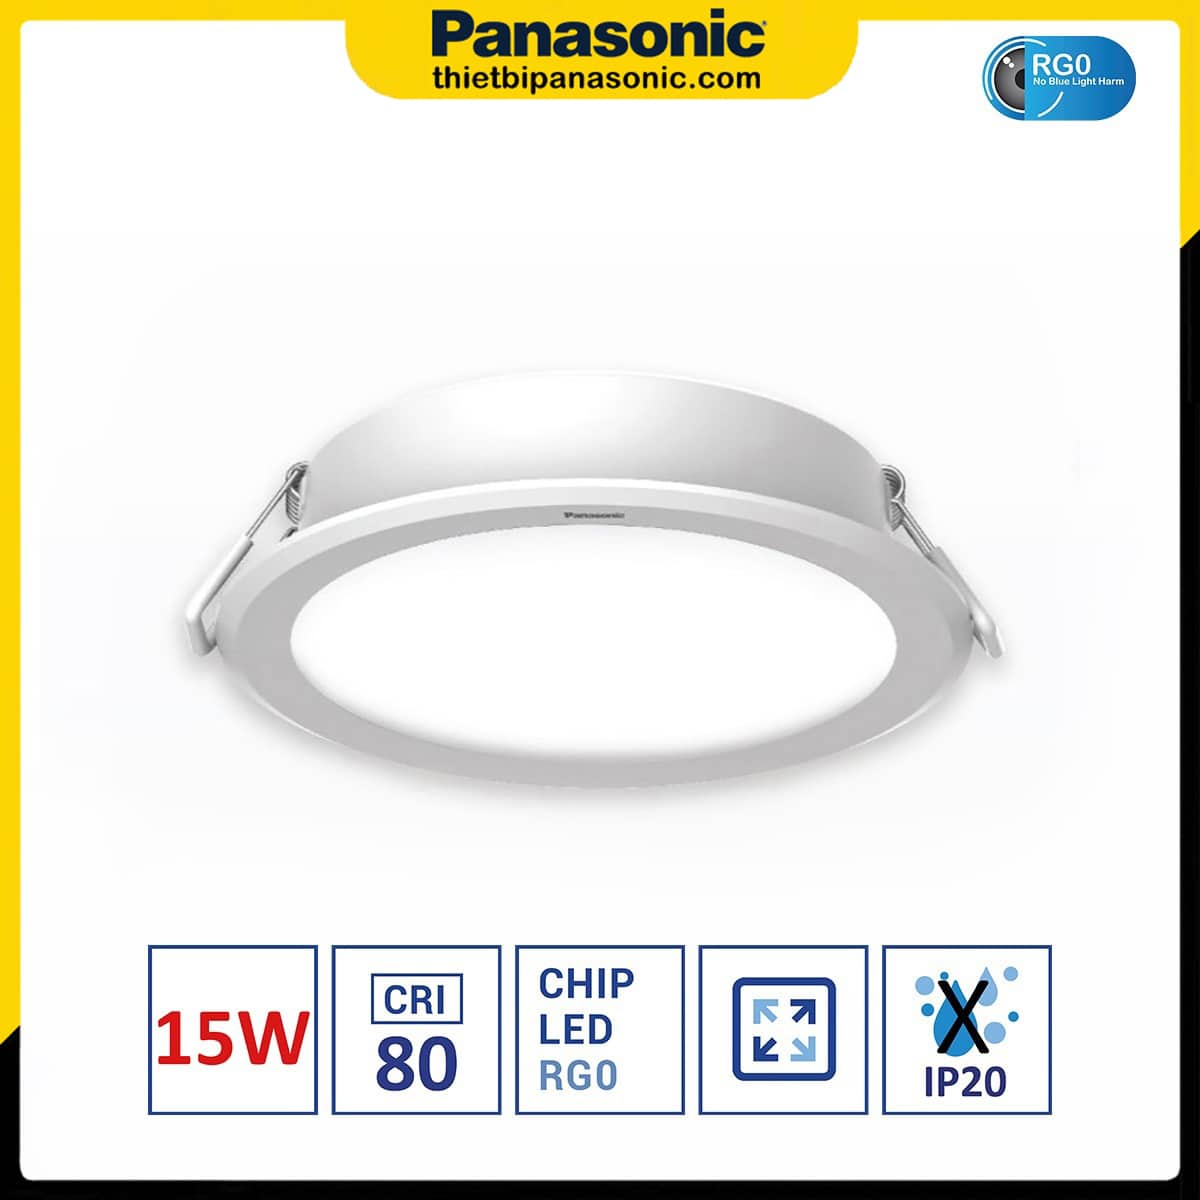 Đèn âm trần DN 2G Panasonic 15W đơn sắc tròn | lỗ khoét Ø125mm, Ø150mm